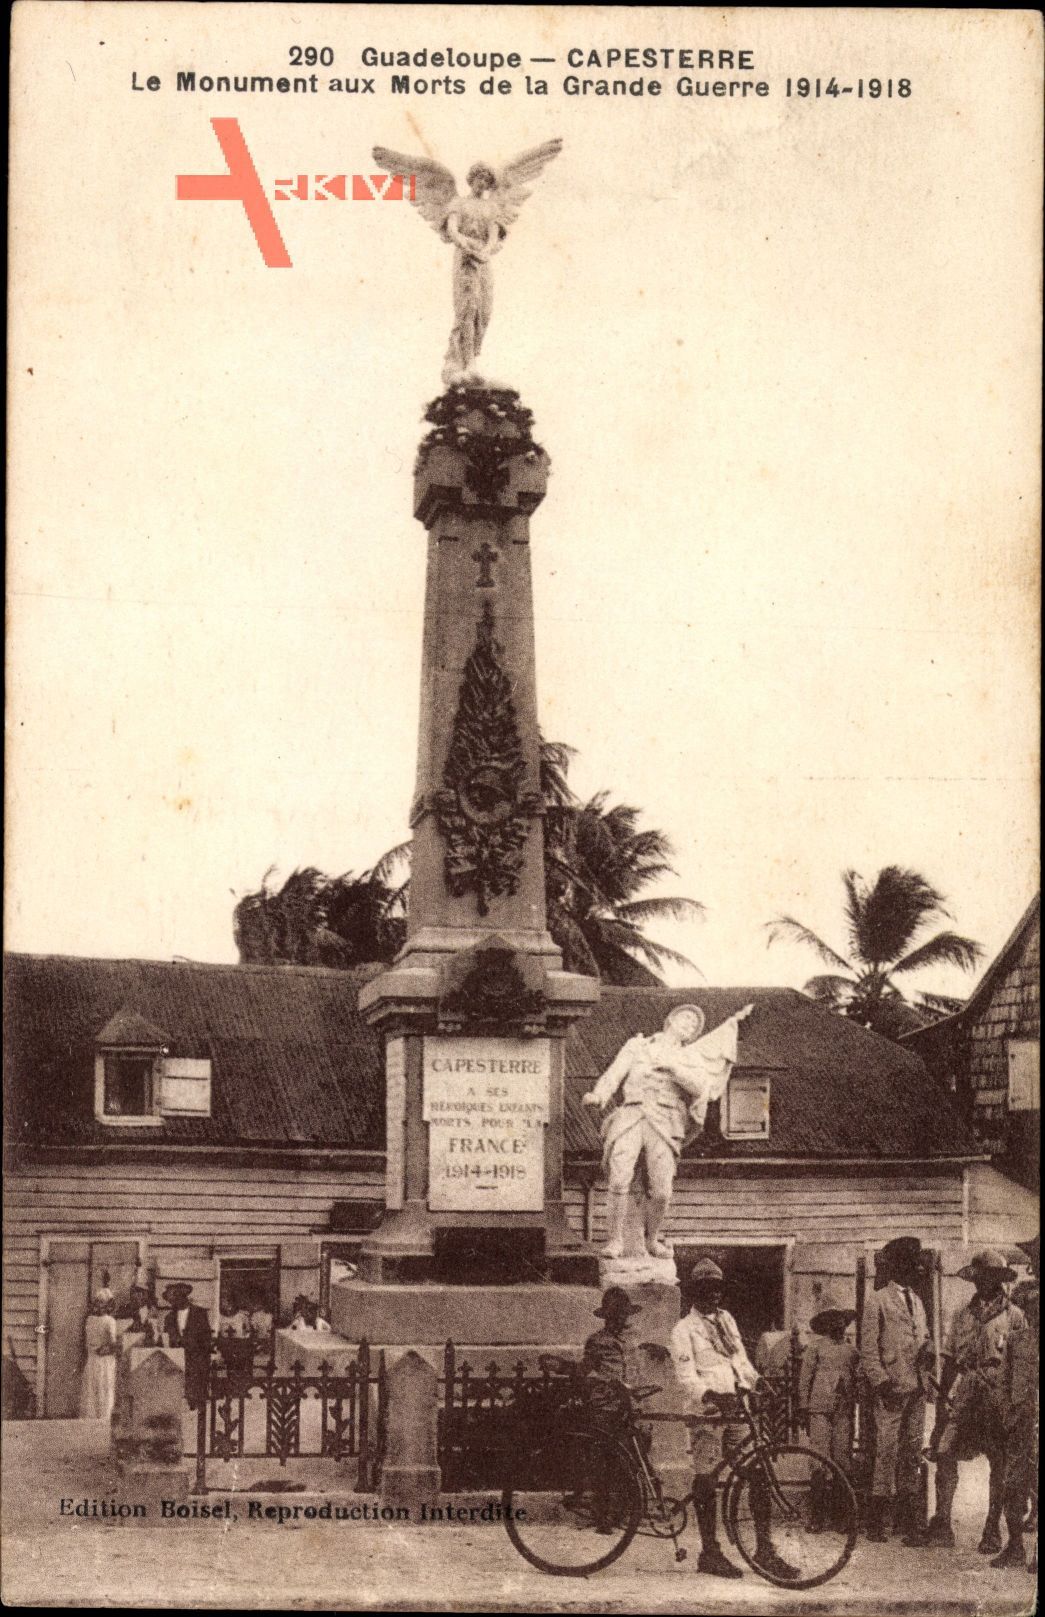 Capesterre Guadeloupe, Le Monument aux Morts de la Grande Guerre